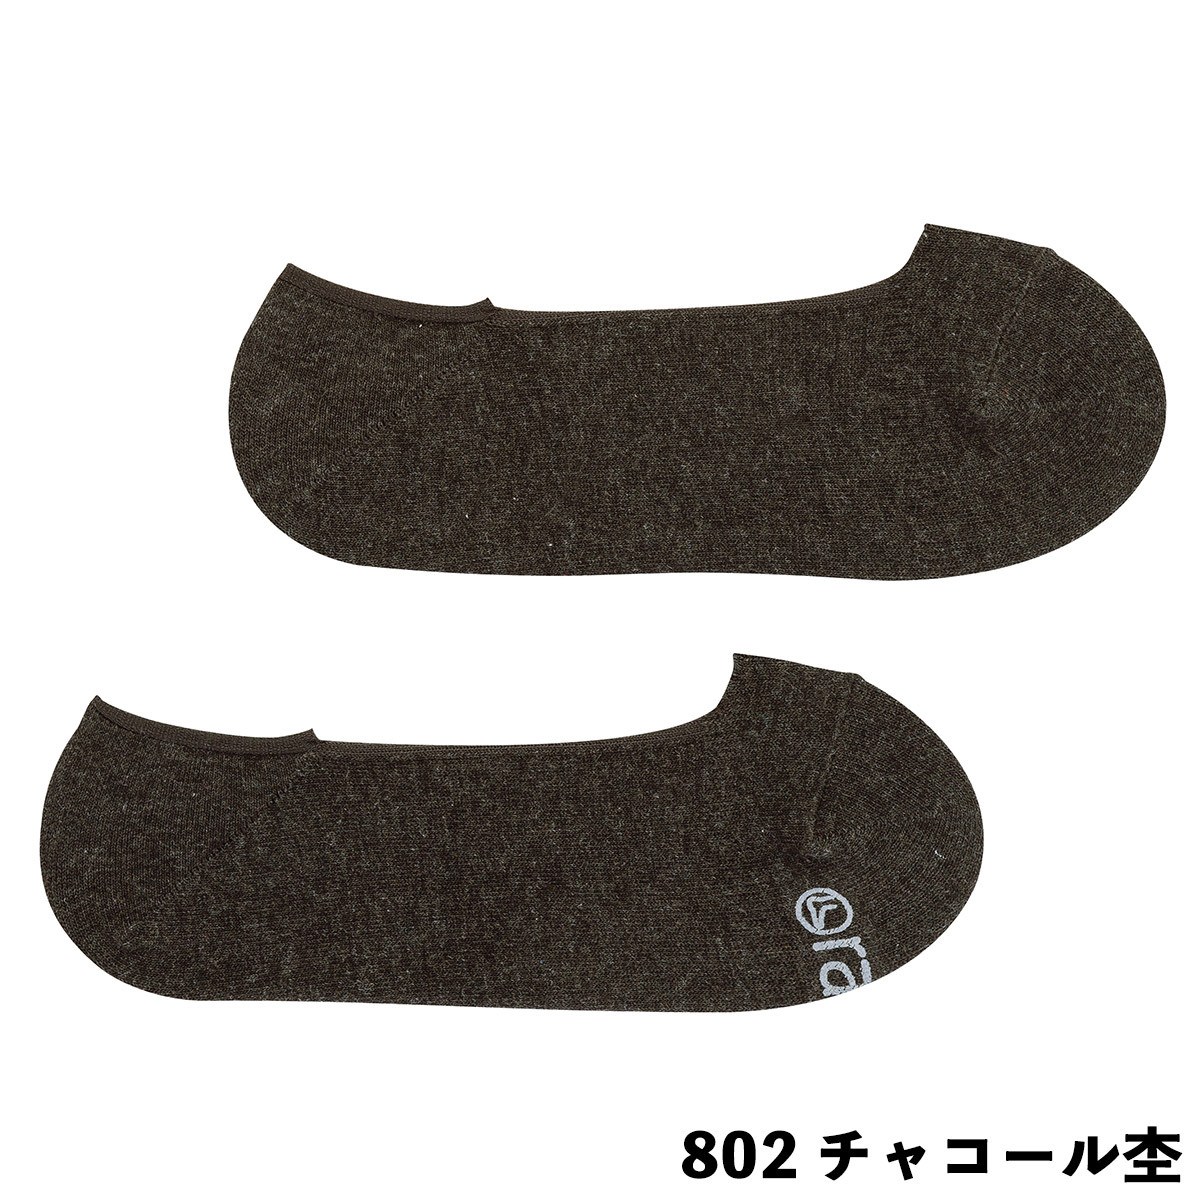 ラソックス 靴下 ソックス レディース ベーシック・カバー BA151CO01 定番 日本製 ユニセ...